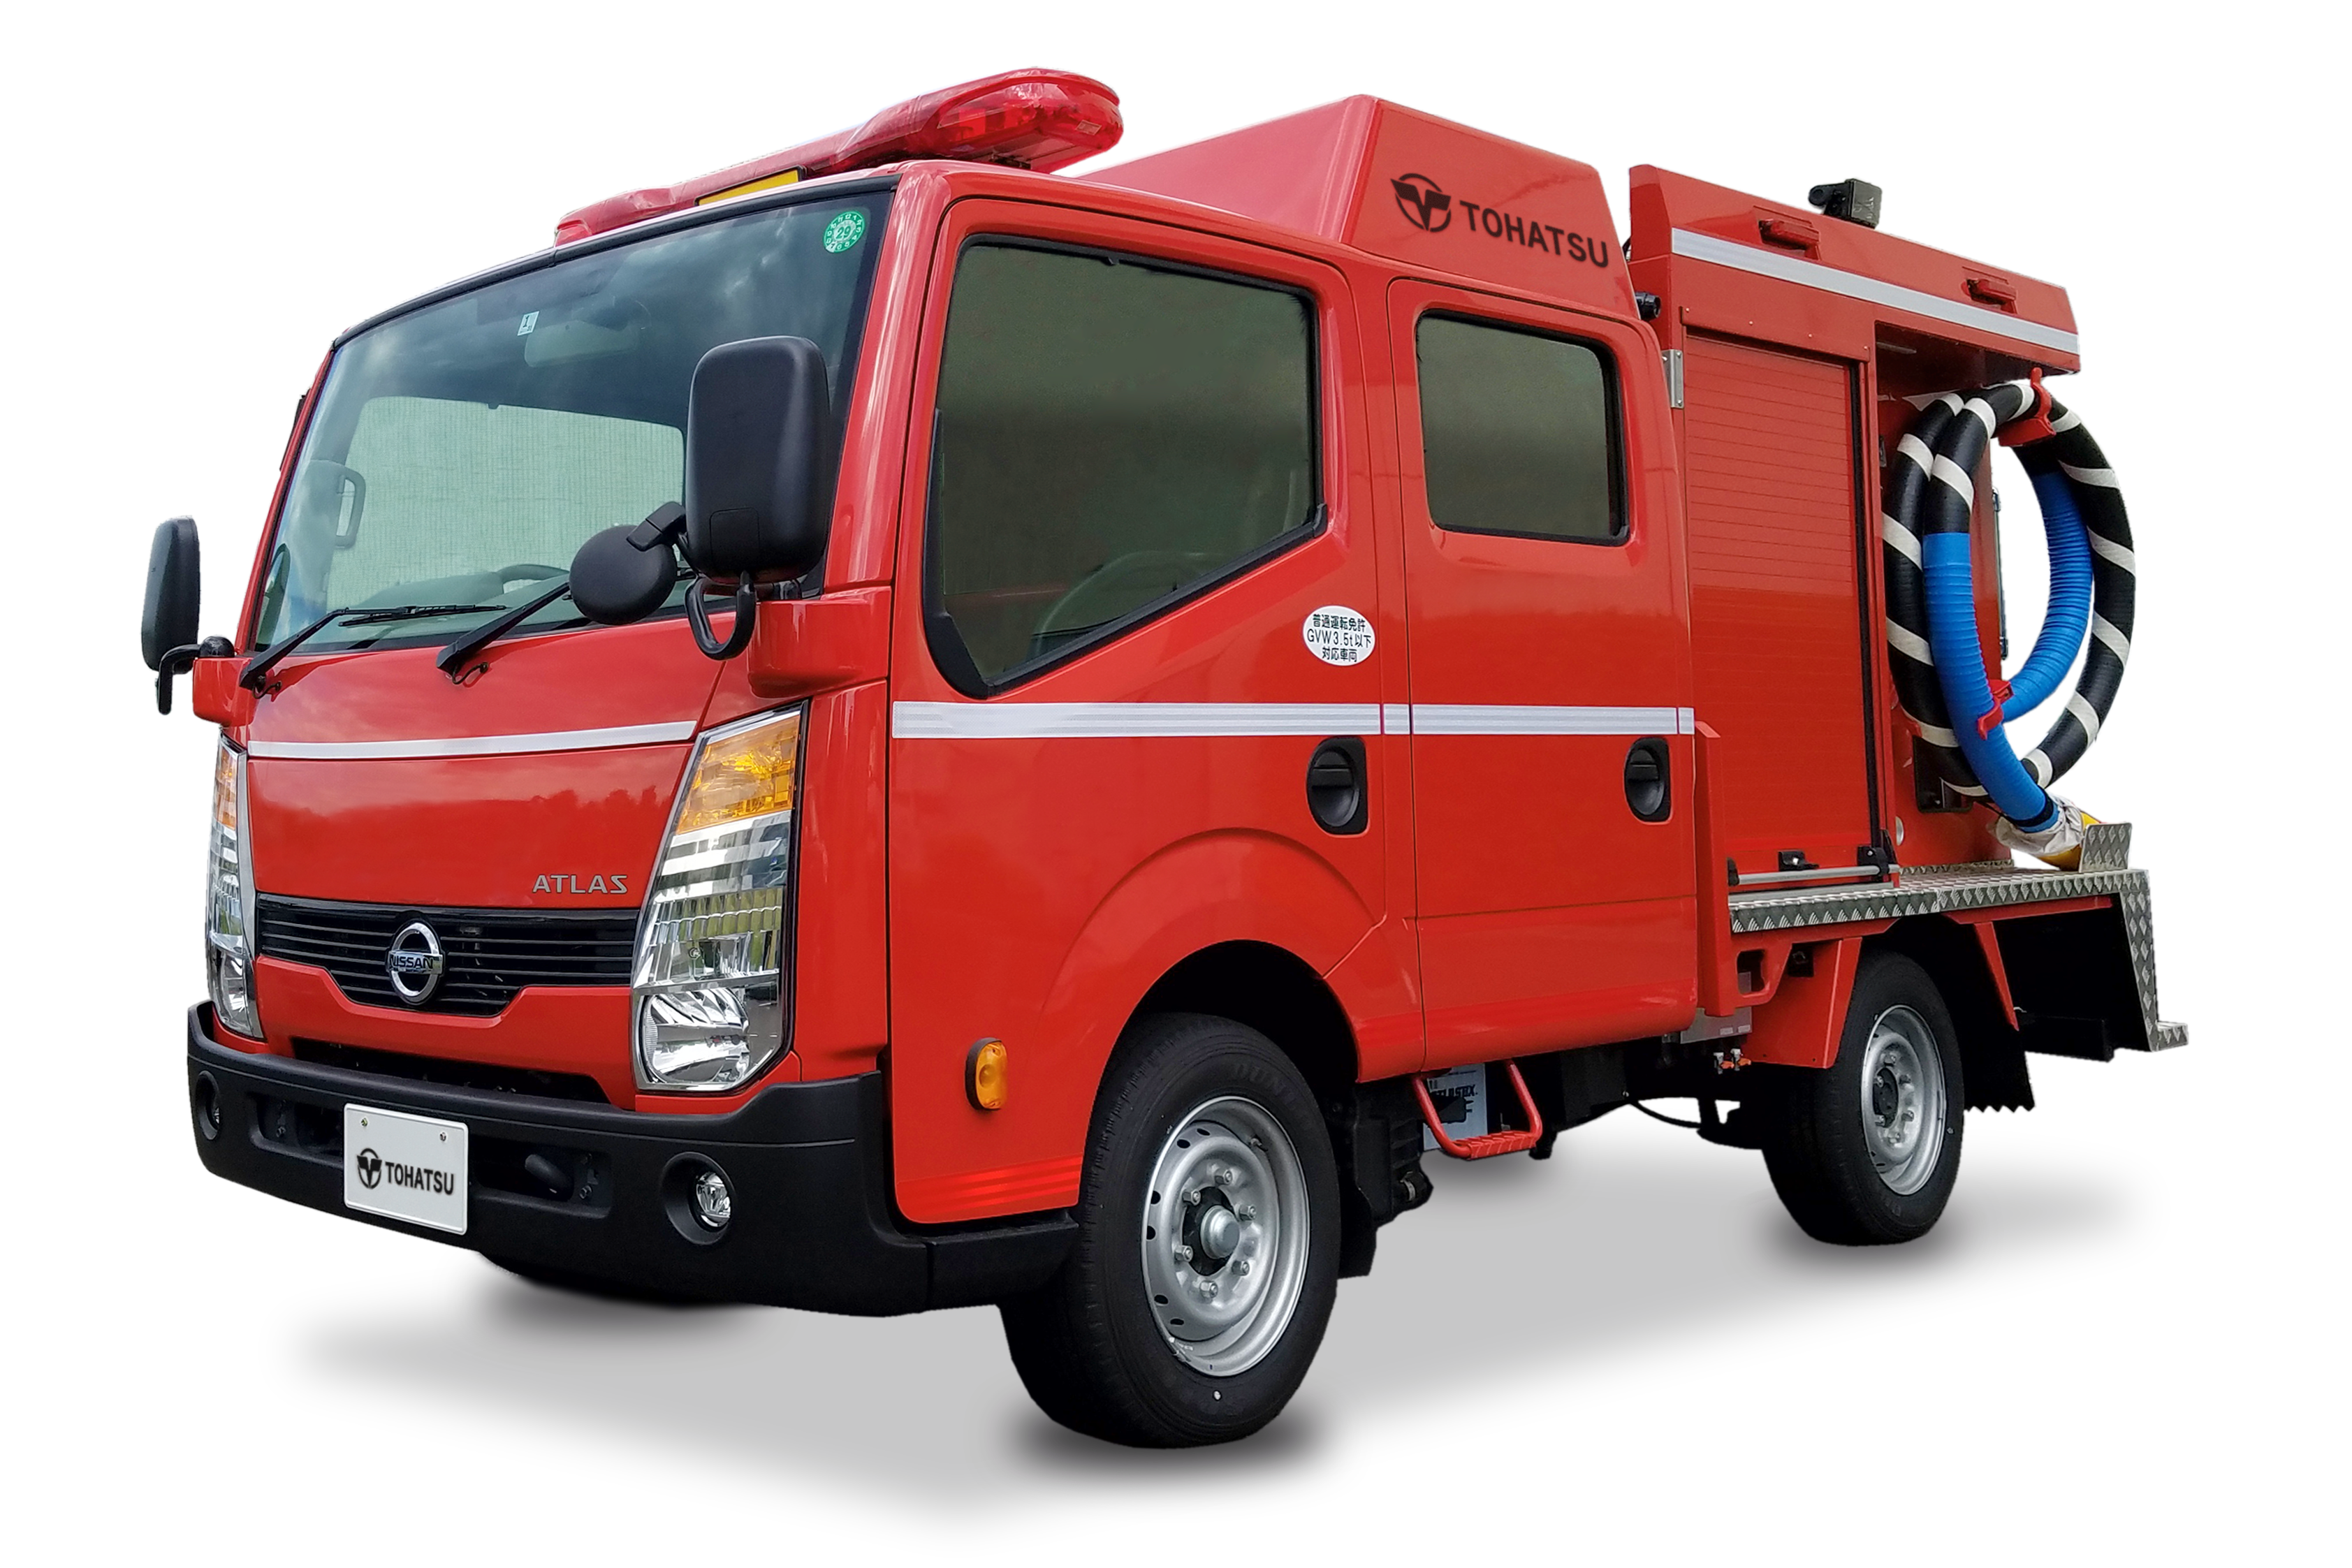 可搬消防ポンプ積載車車両総重量 Gvw 3 5t未満 多機能型積載車 消防 特殊車両 トーハツ株式会社